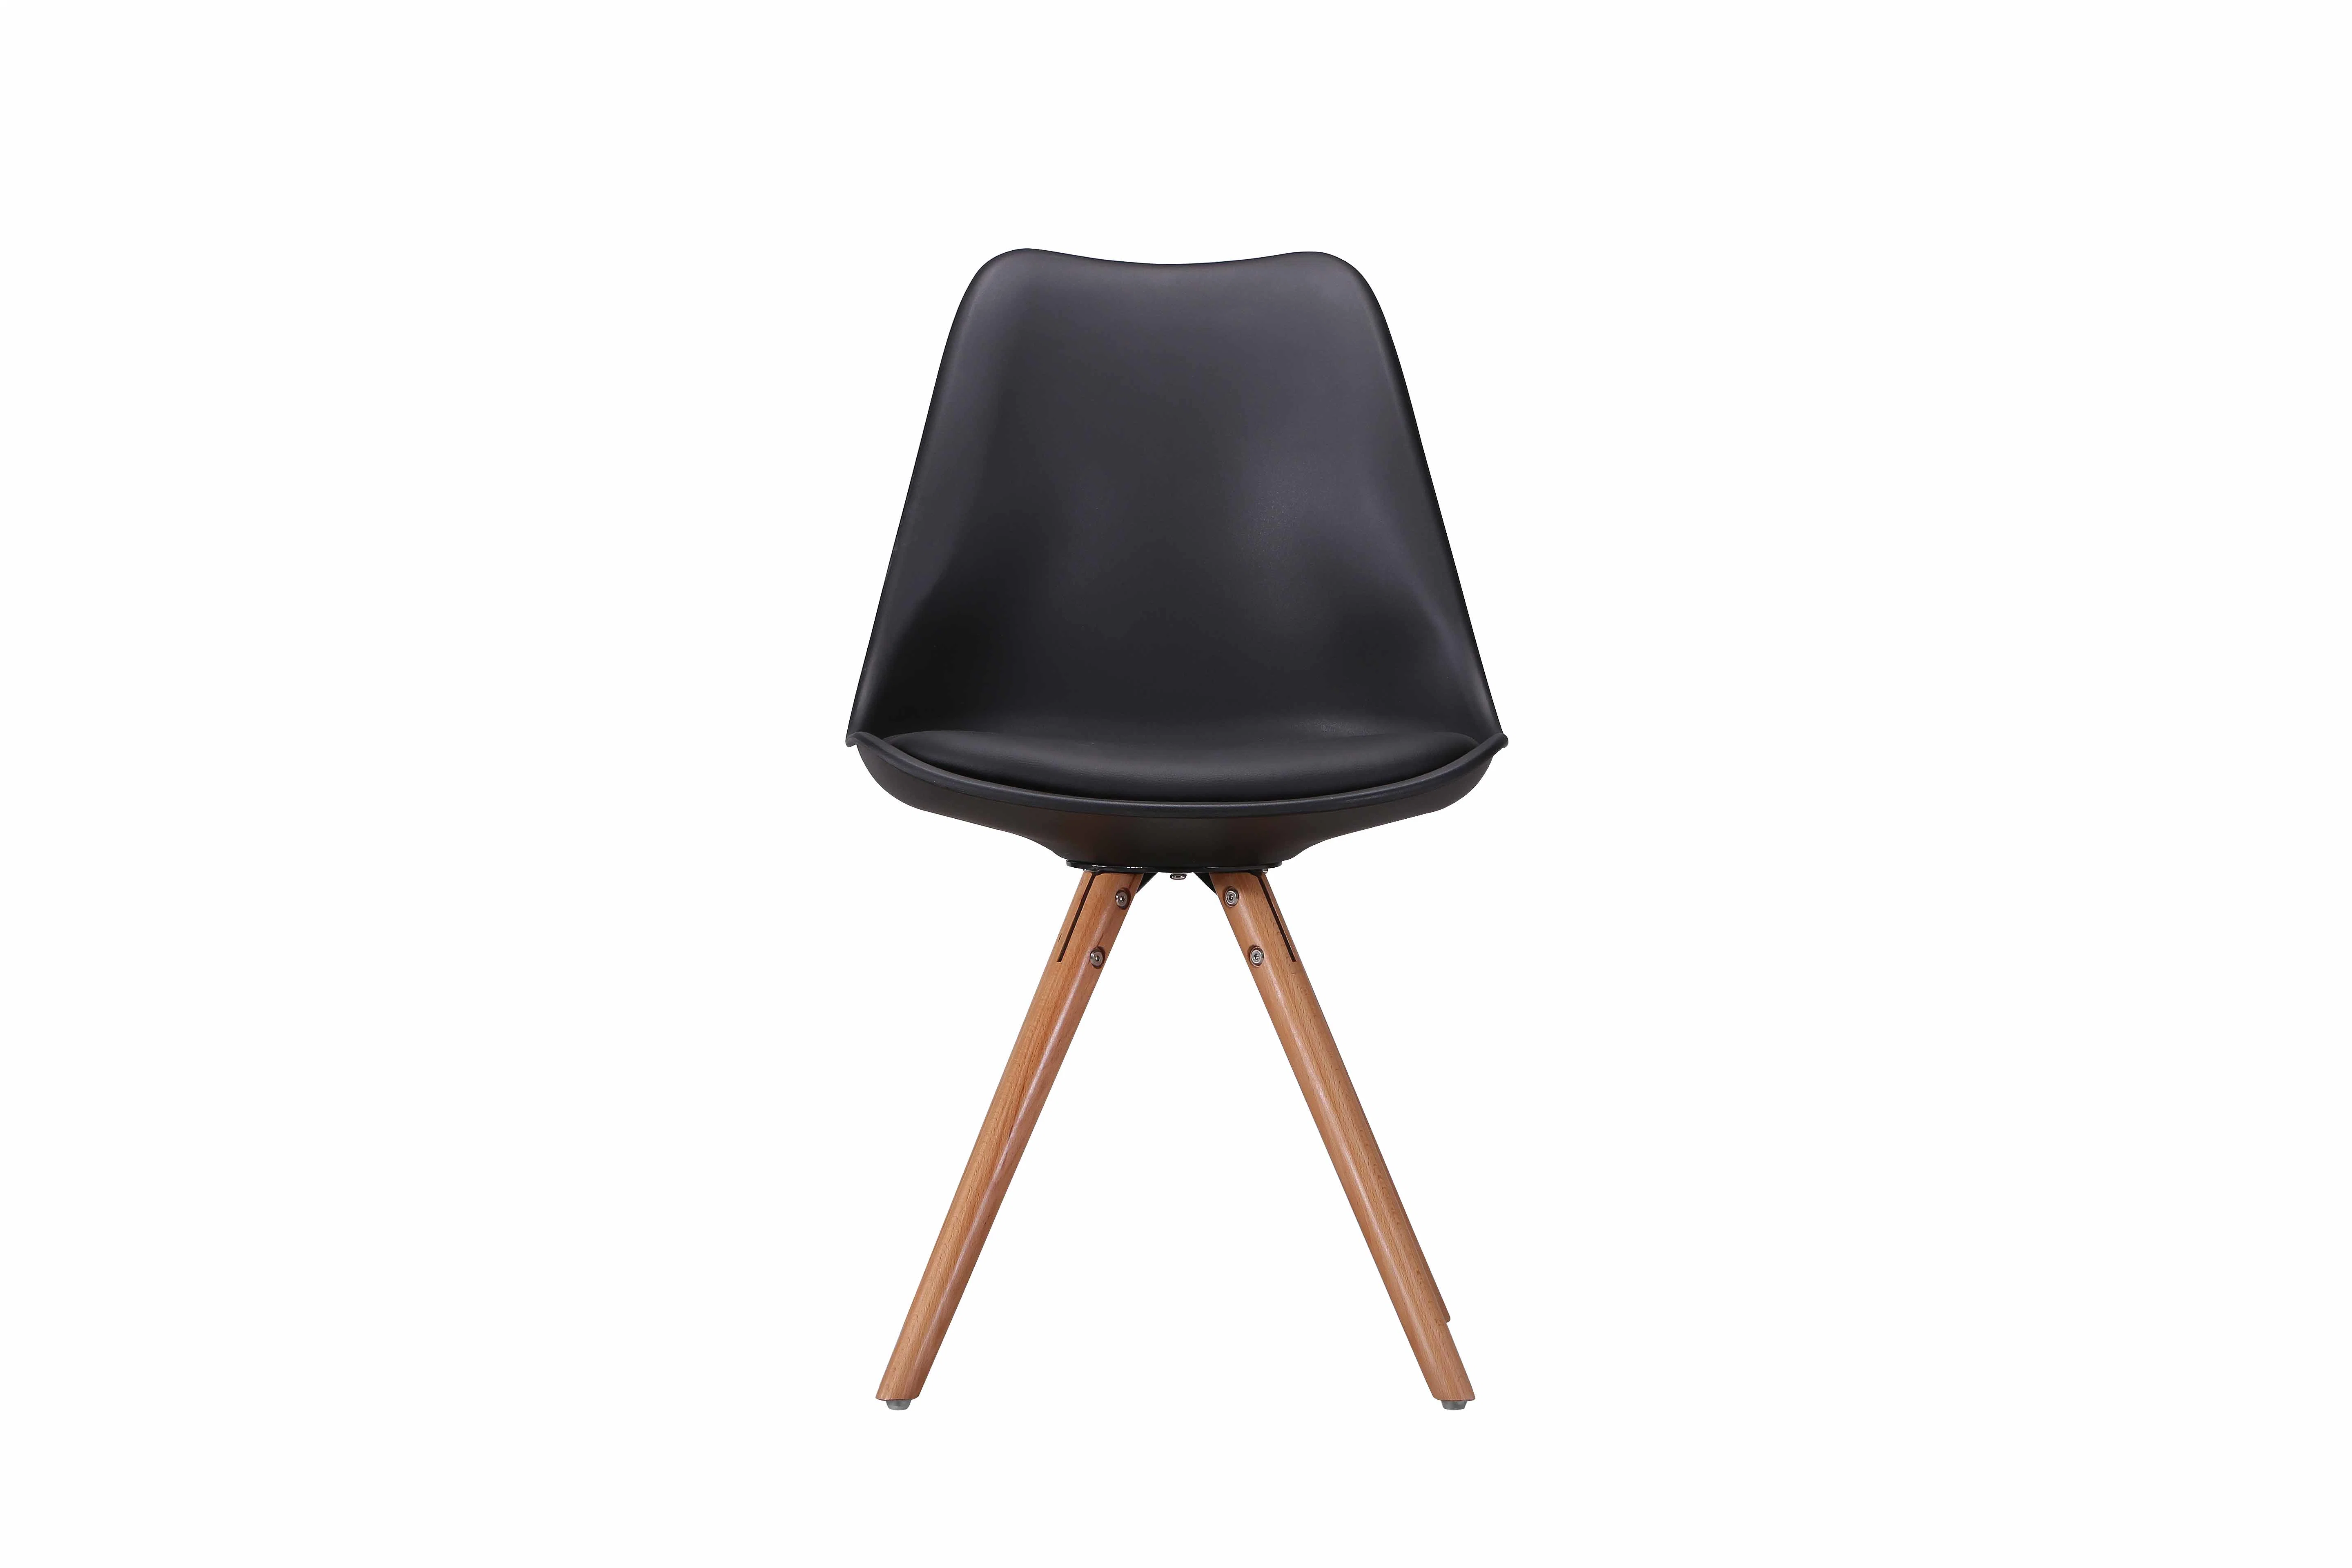 New Original Design 4 Metal Legs Plastic Restaurant Dining Chair